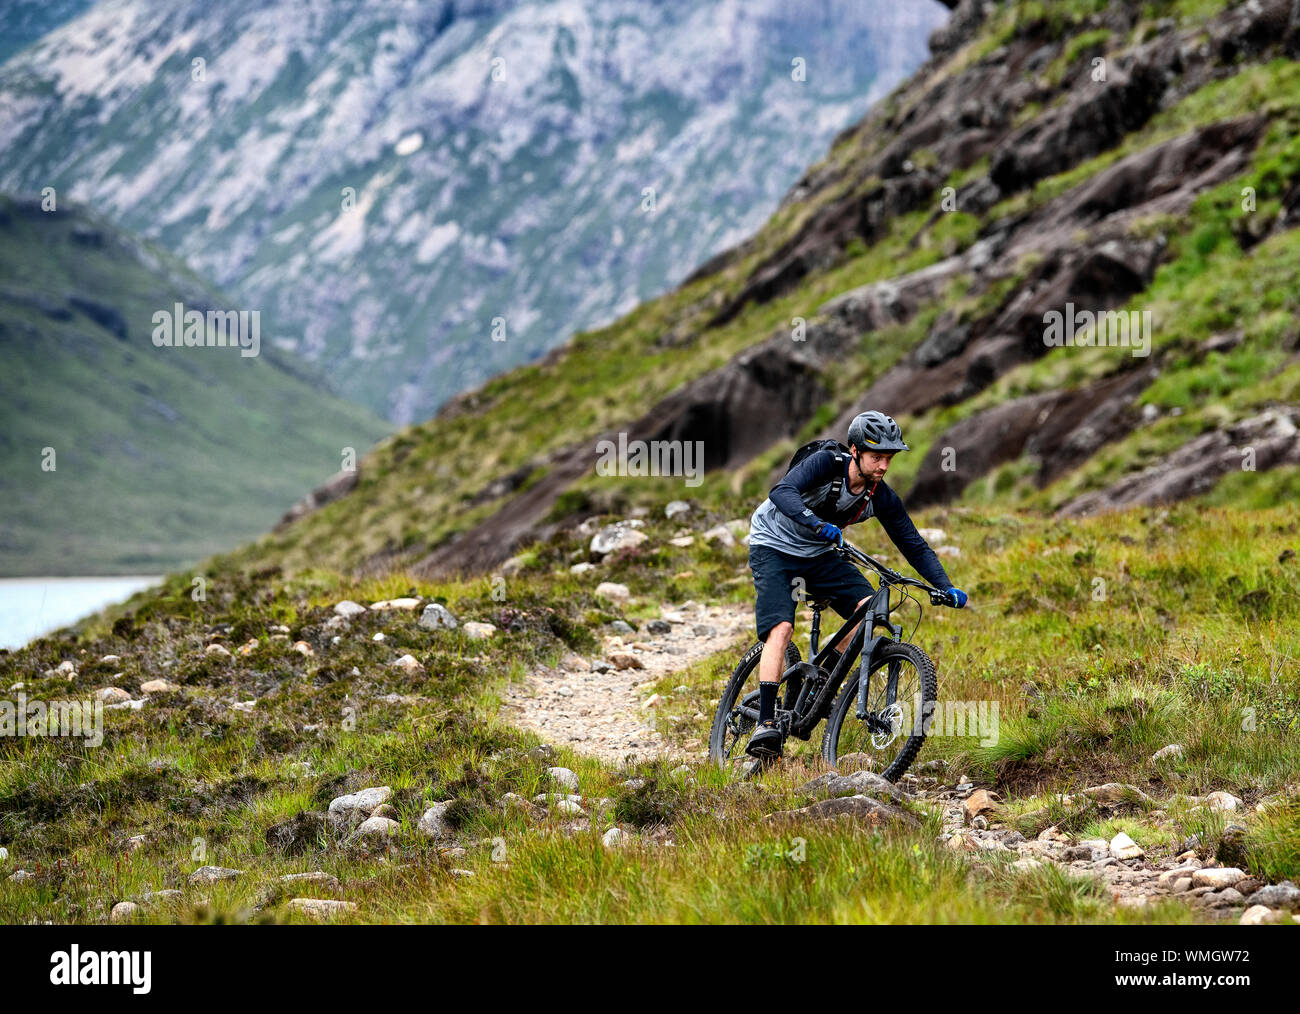 Cyclisme En Pleine Nature Banque d'image et photos - Alamy